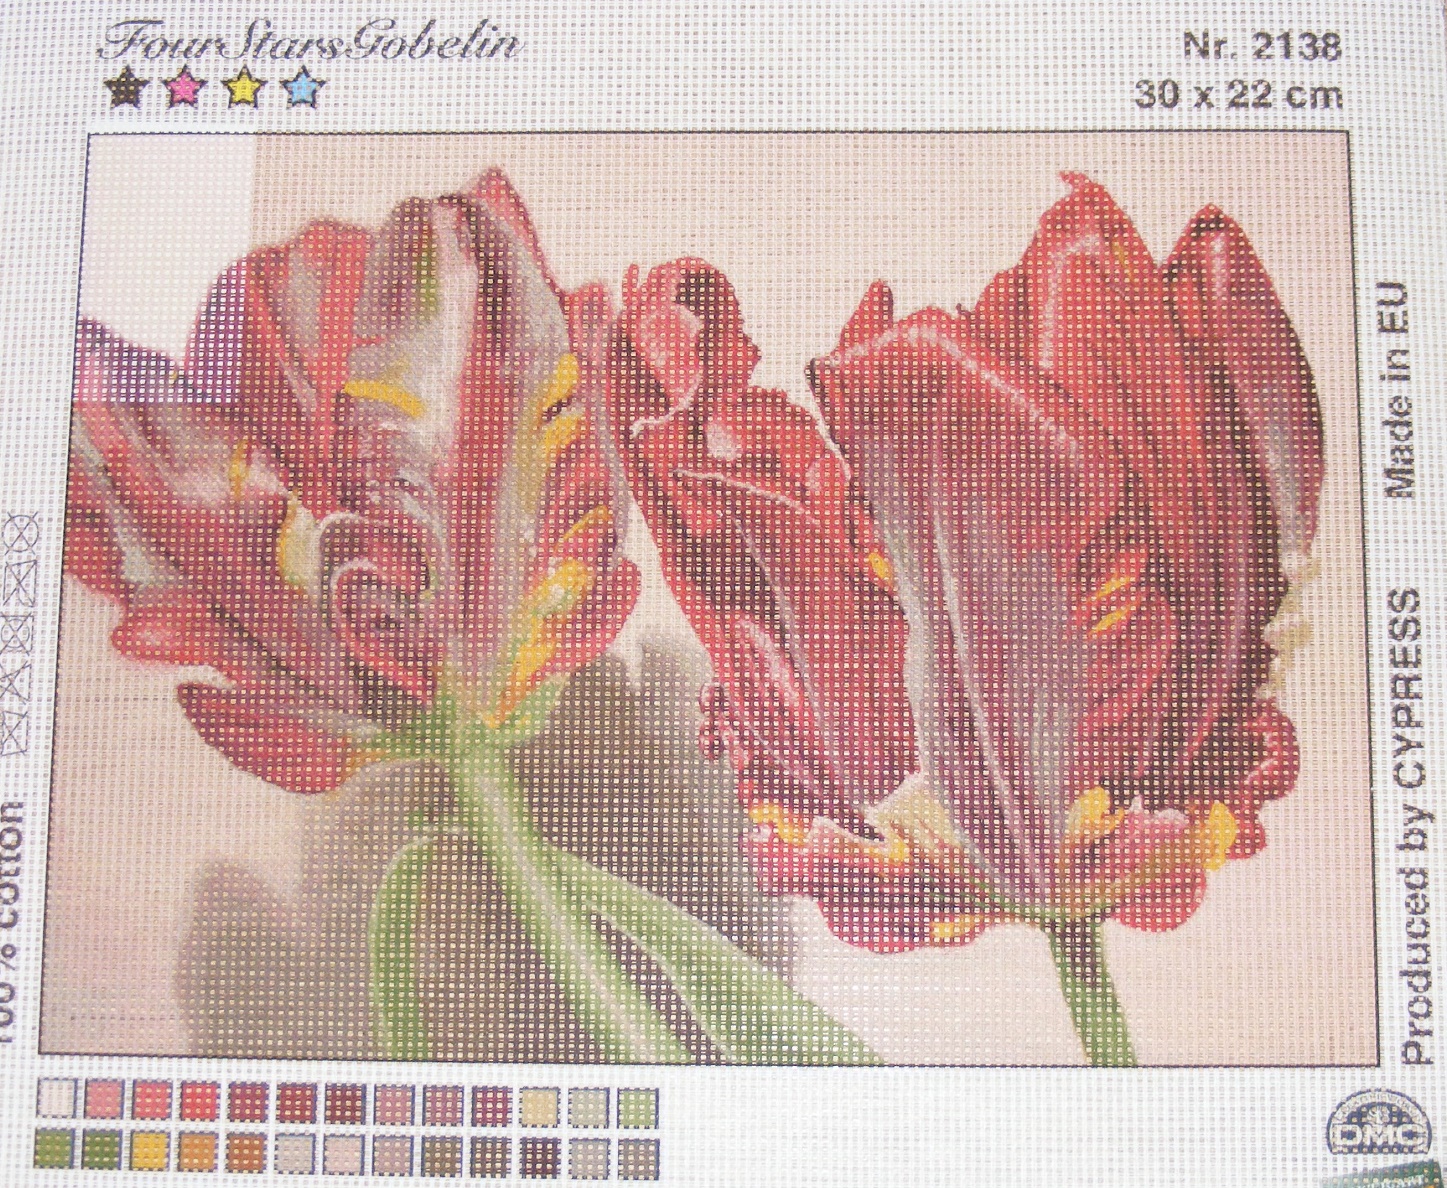 Gobelin 30x22 cm - Virág 2138